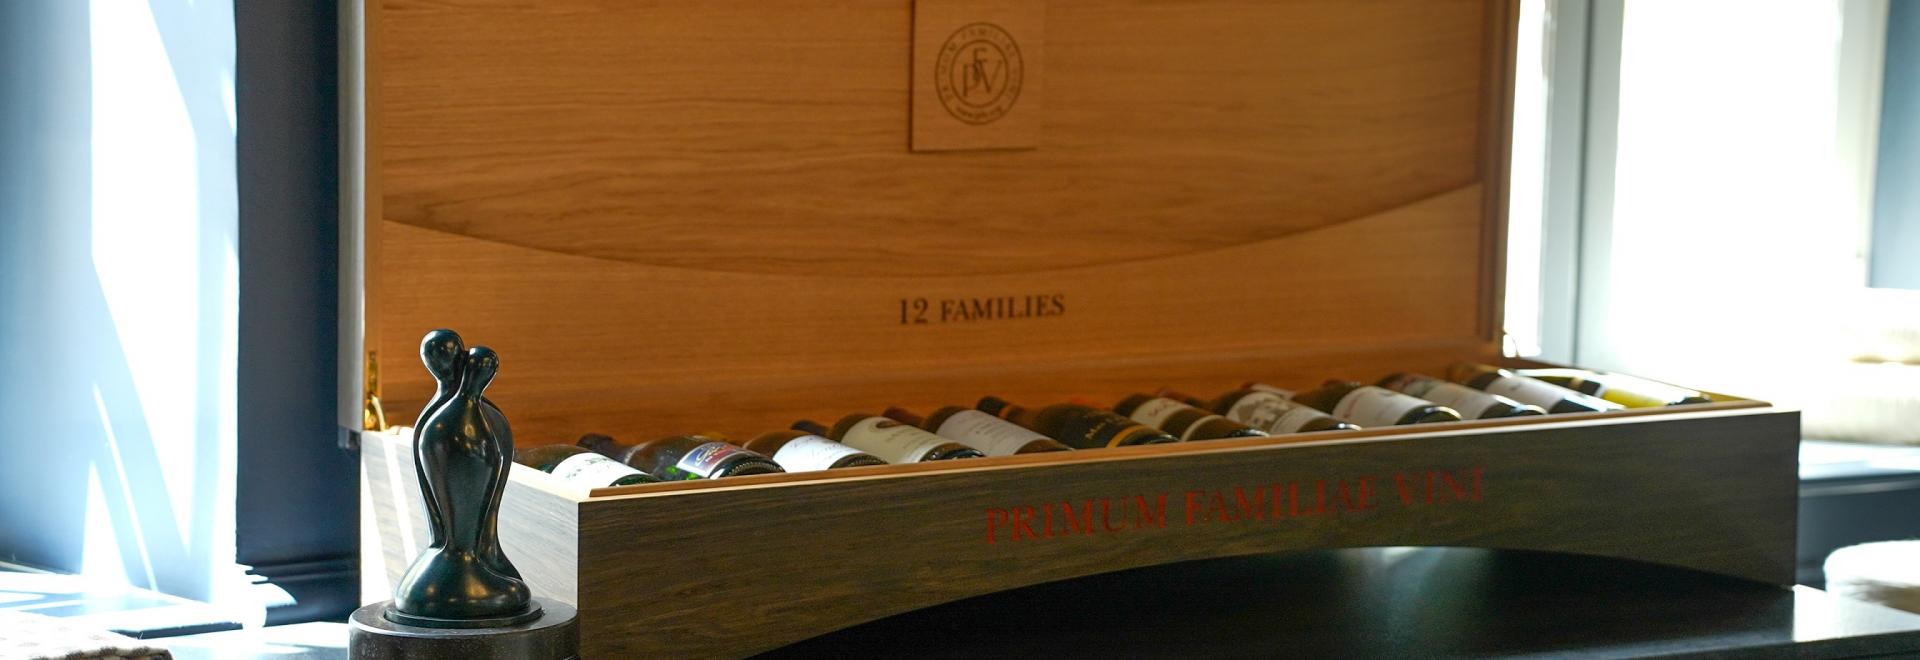 Primum Familiae Vini announces the 2024 edition of the €100,000 PFV Award |  Familia Torres | Primum Familiae Vini announces the 2024 edition of the  €100,000 PFV Award | Familia Torres